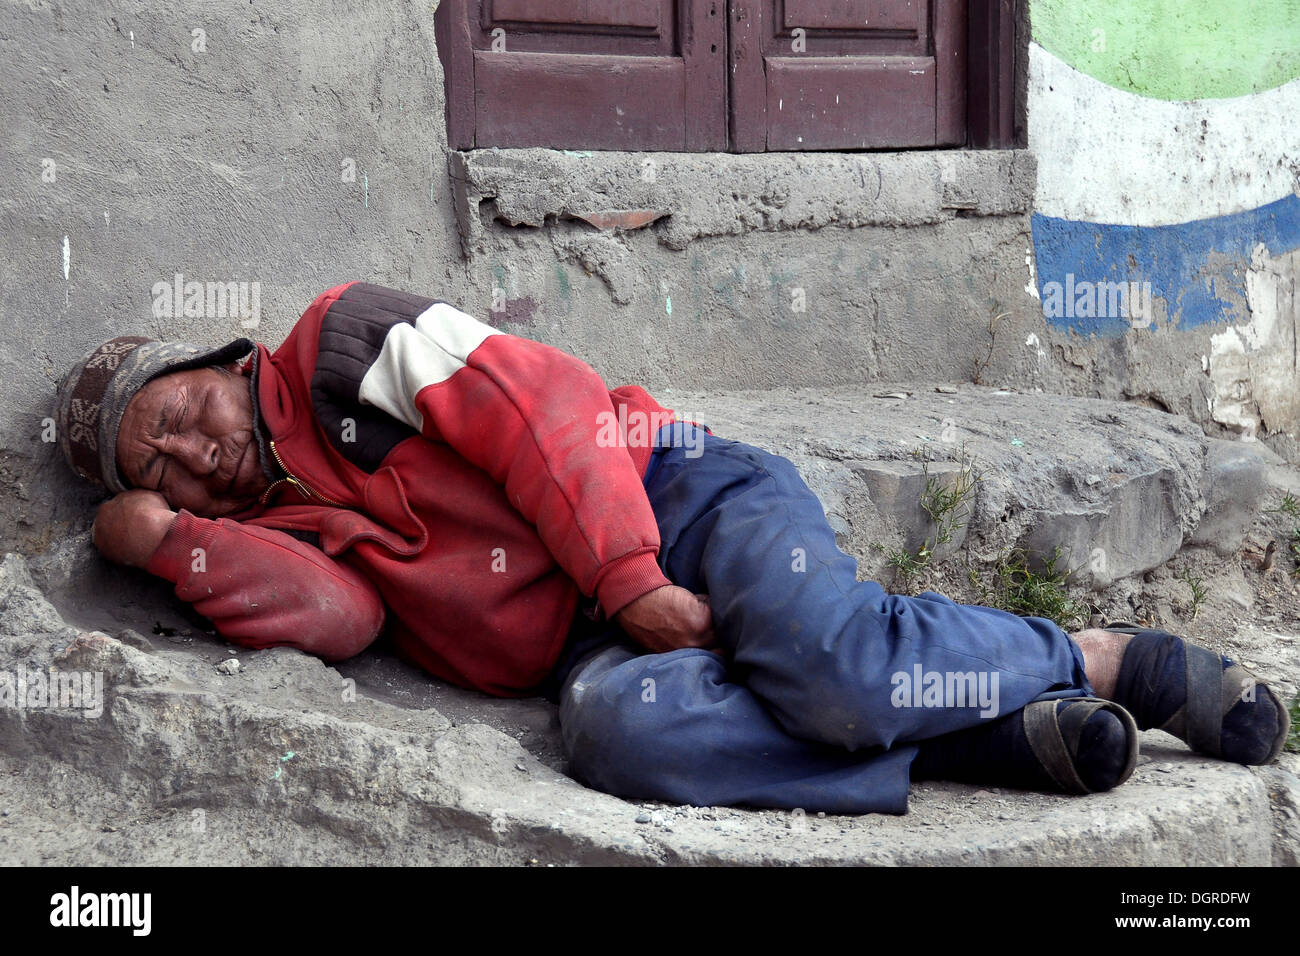 Uomo senza tetto dei popoli indigeni, la Paz, Bolivia, SUD AMERICA Foto Stock